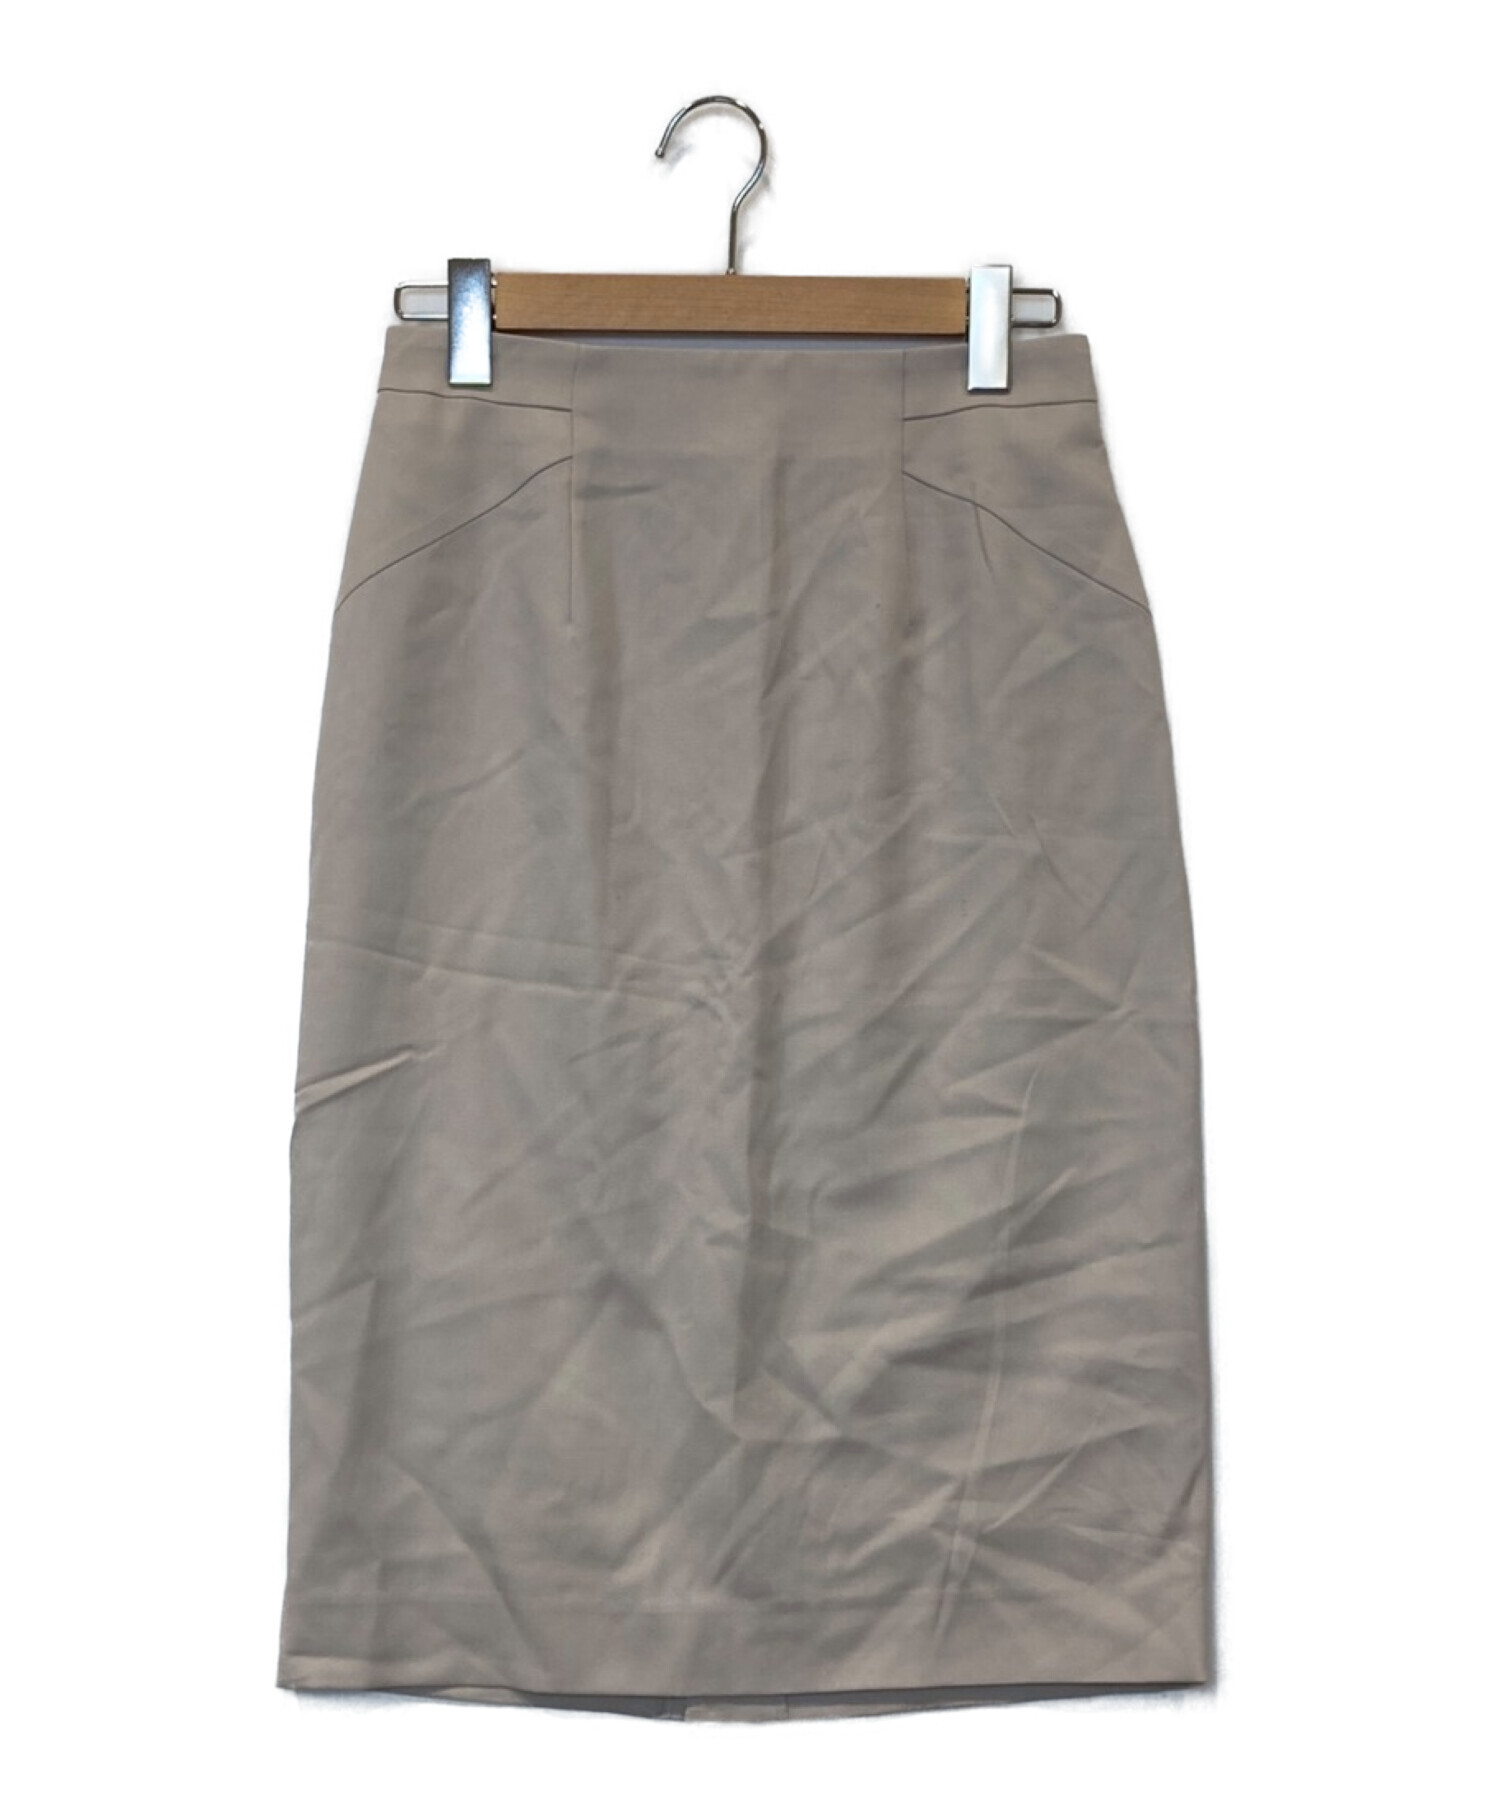 ピンキーアンドダイアン ミニスカート サイズ38 - スカート